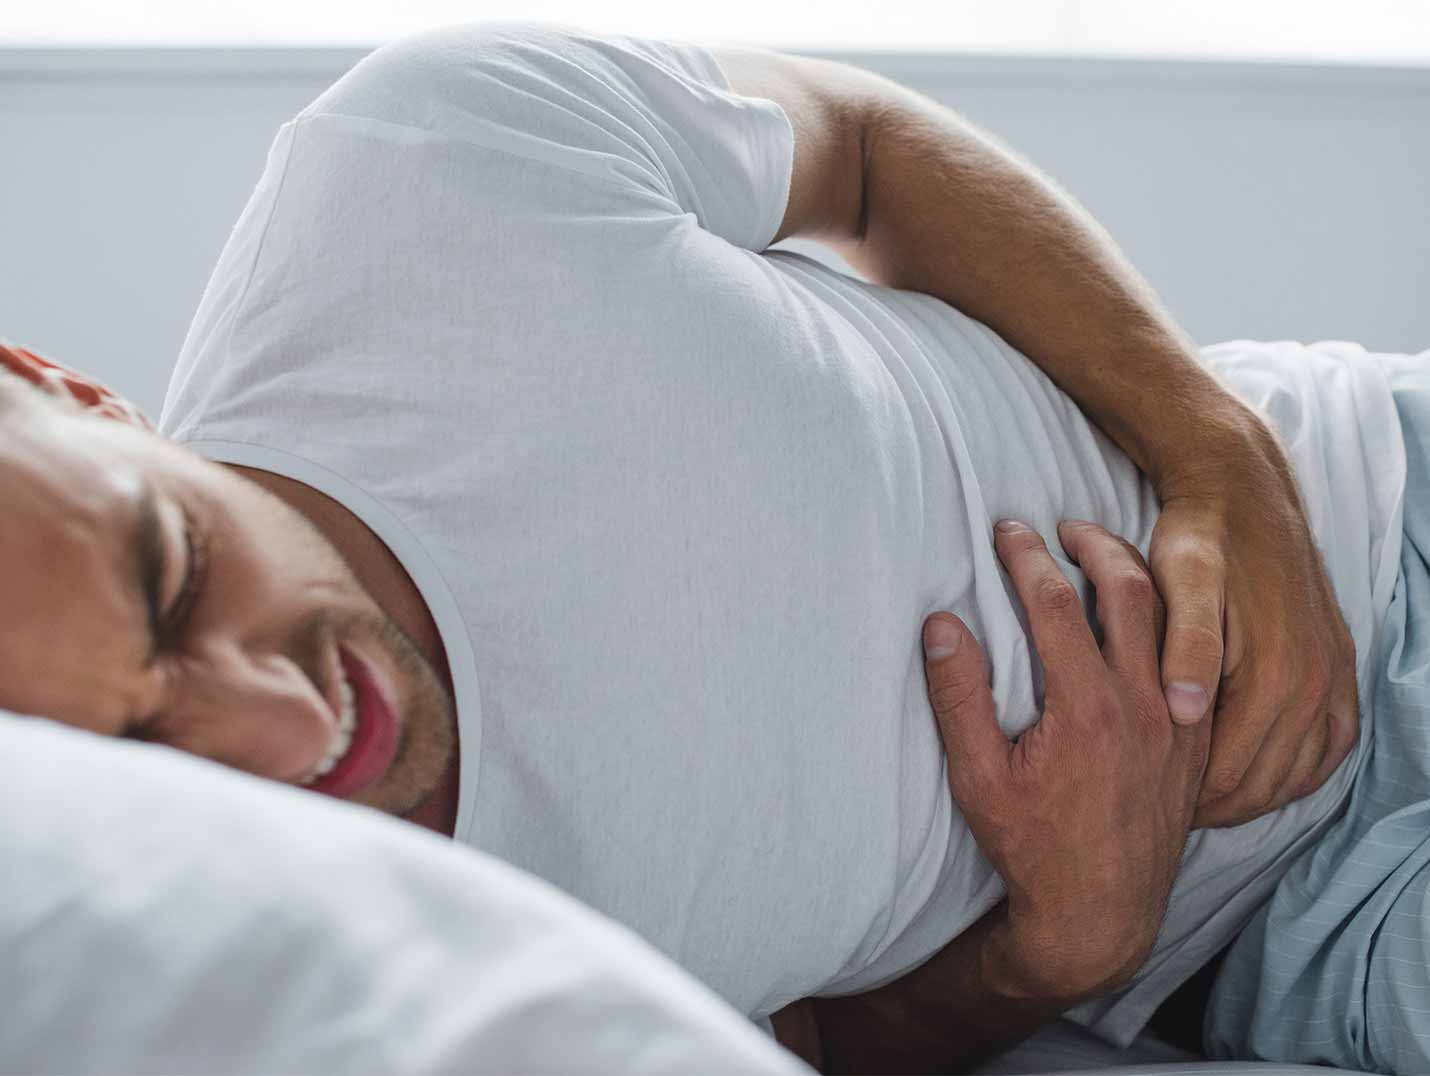 Hombre joven vistiendo una playera blanca, acostado en una cama, tocando su estómago y quejándose de dolor